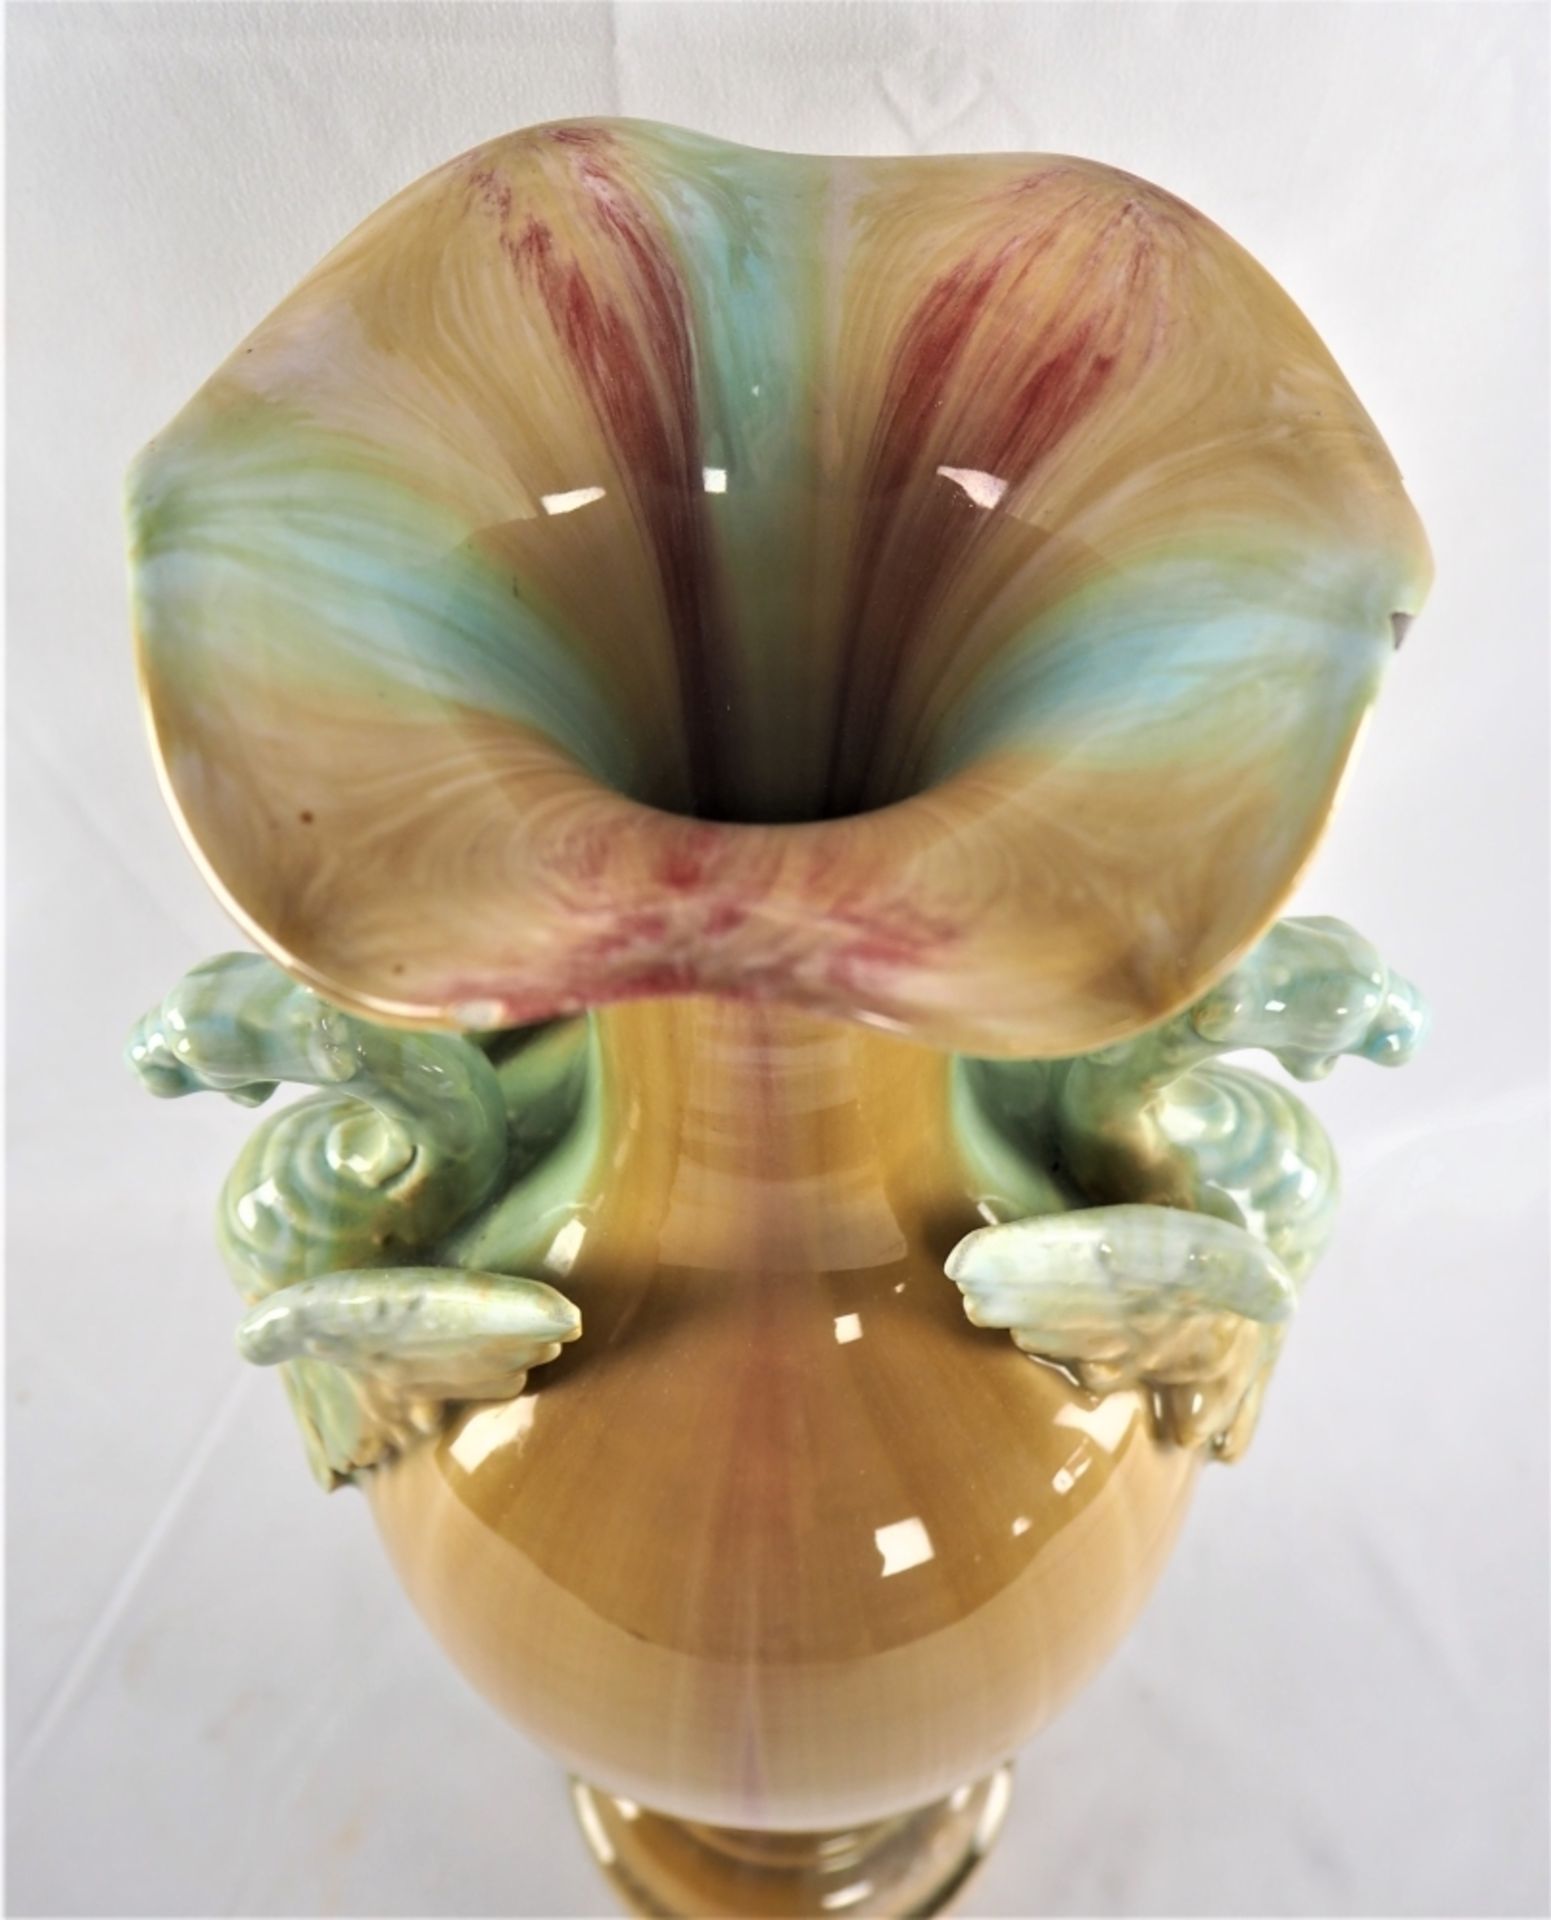 Große Vase 30er JahreKeramik, farbig glasiert, Cuppa-förmig mit gewelltem Hals, Handhabe - Image 2 of 3